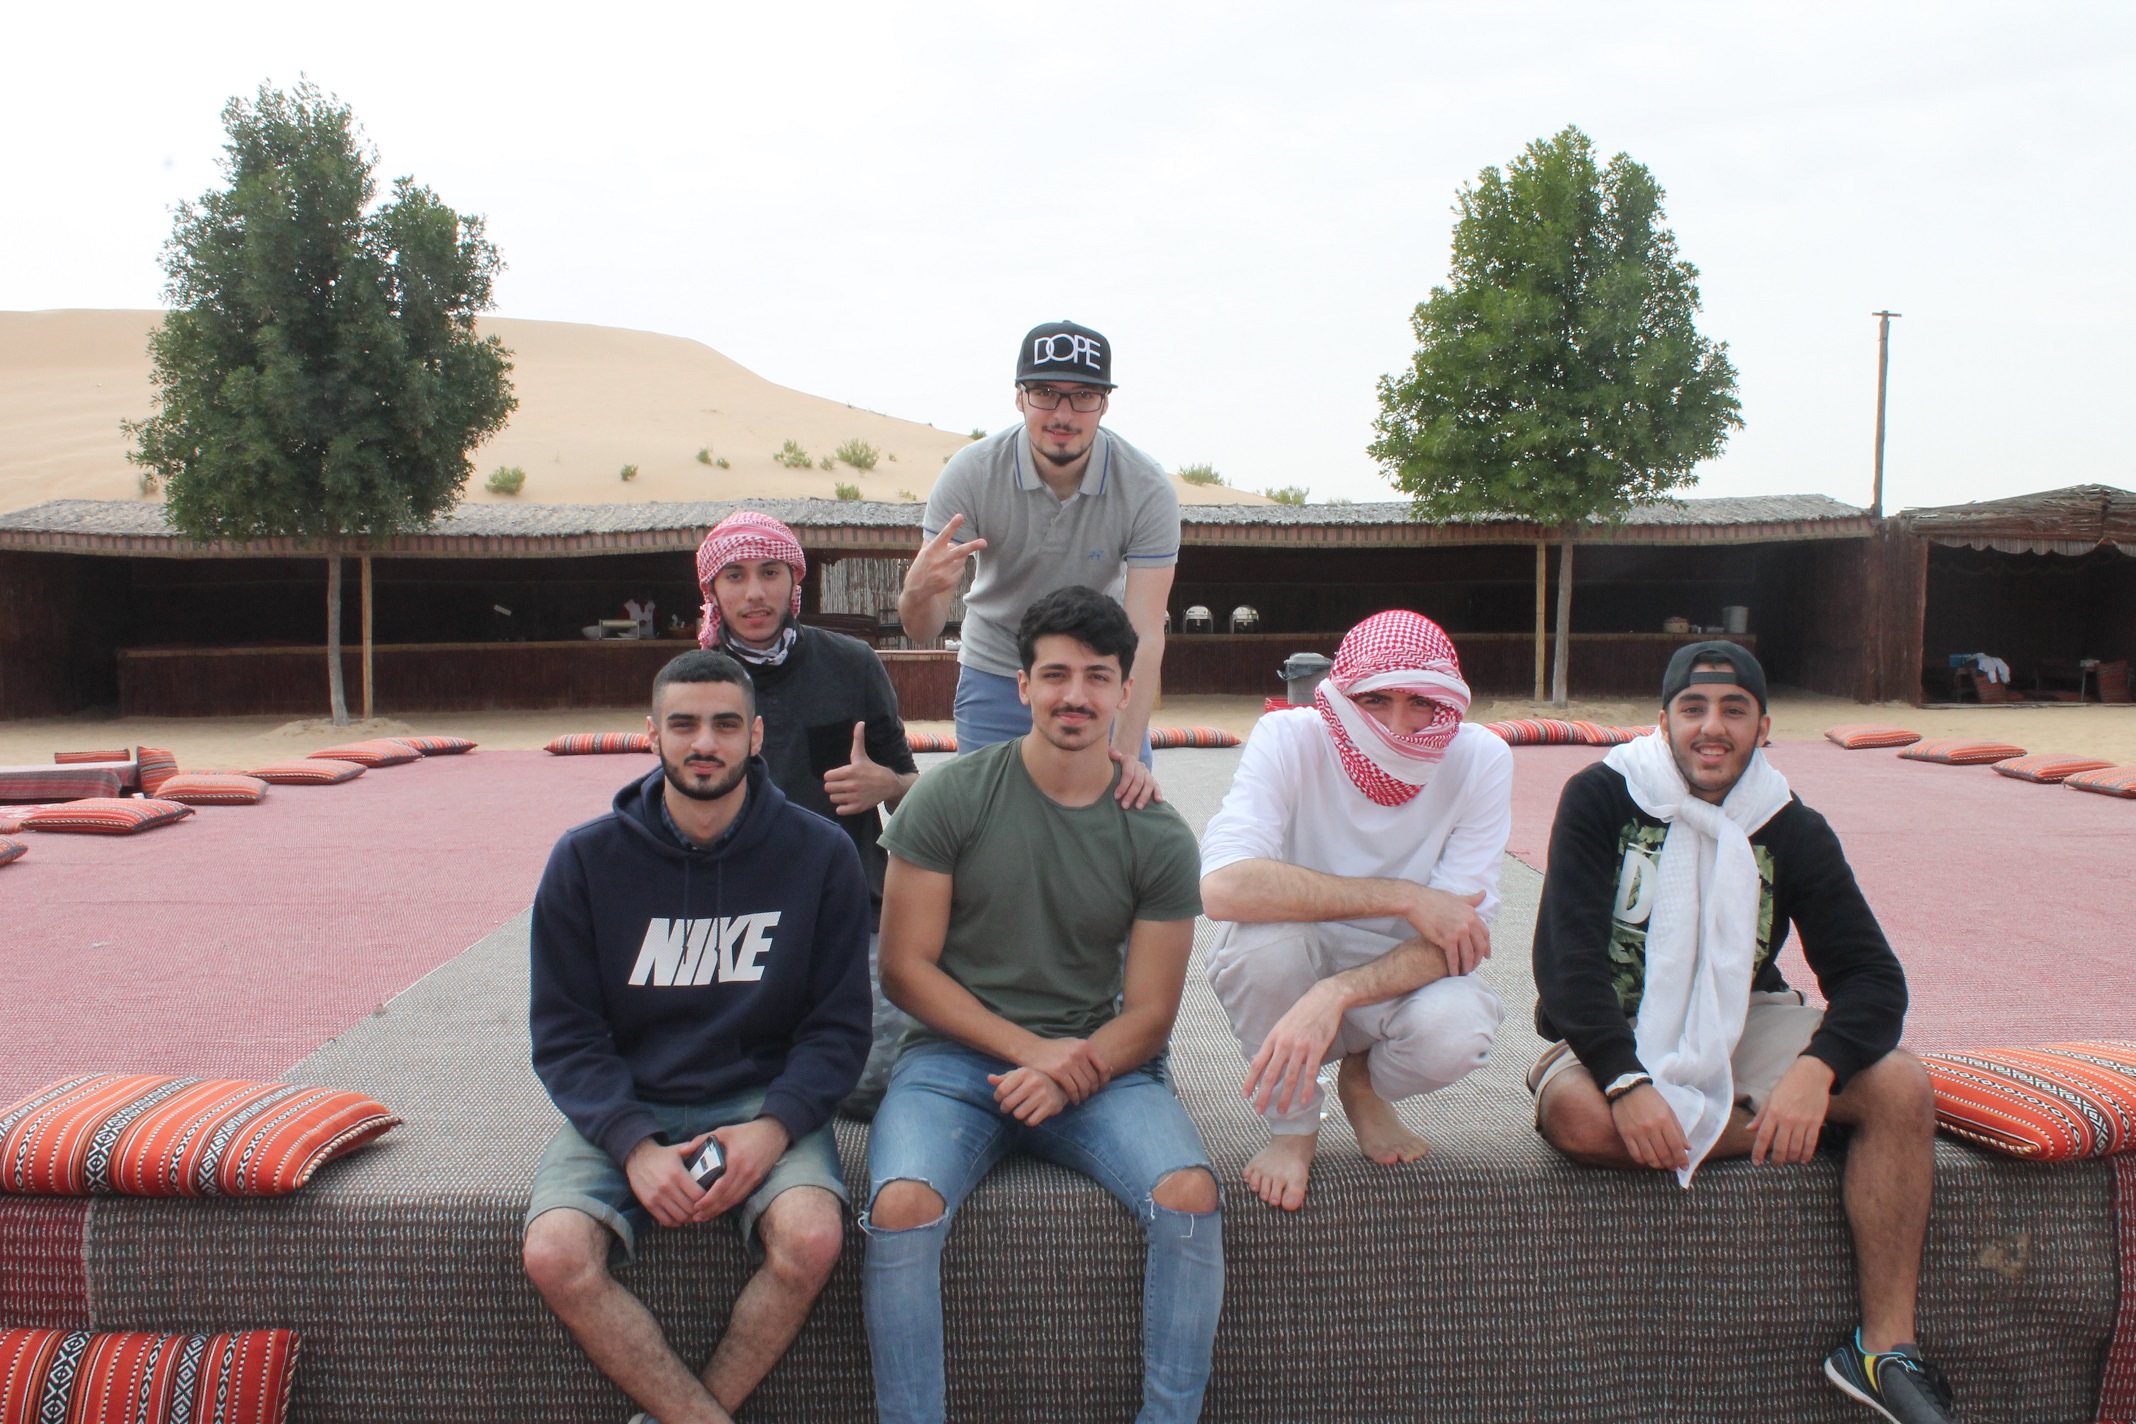 أوقات ممتعة قضوها طلبة جامعة العين في صحراء أبوظبي - جامعة ...